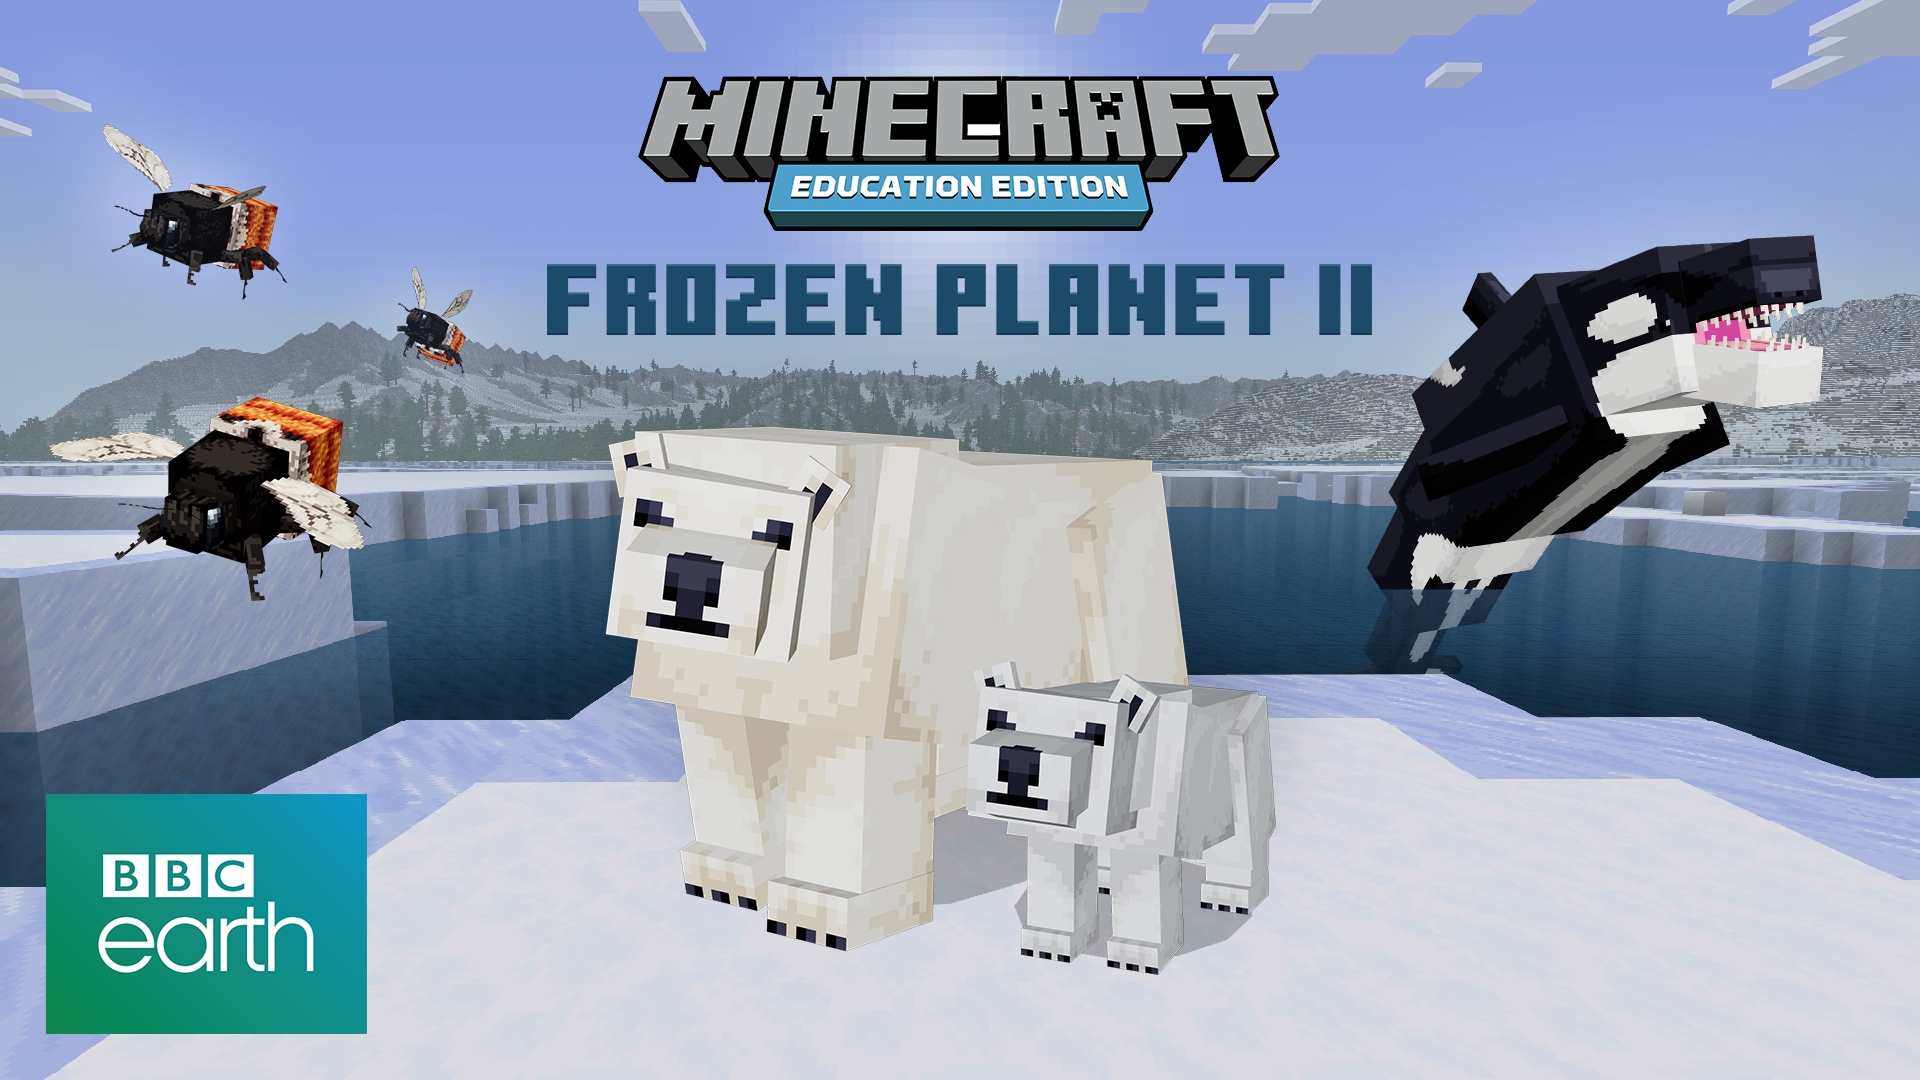 Frozen Planet II